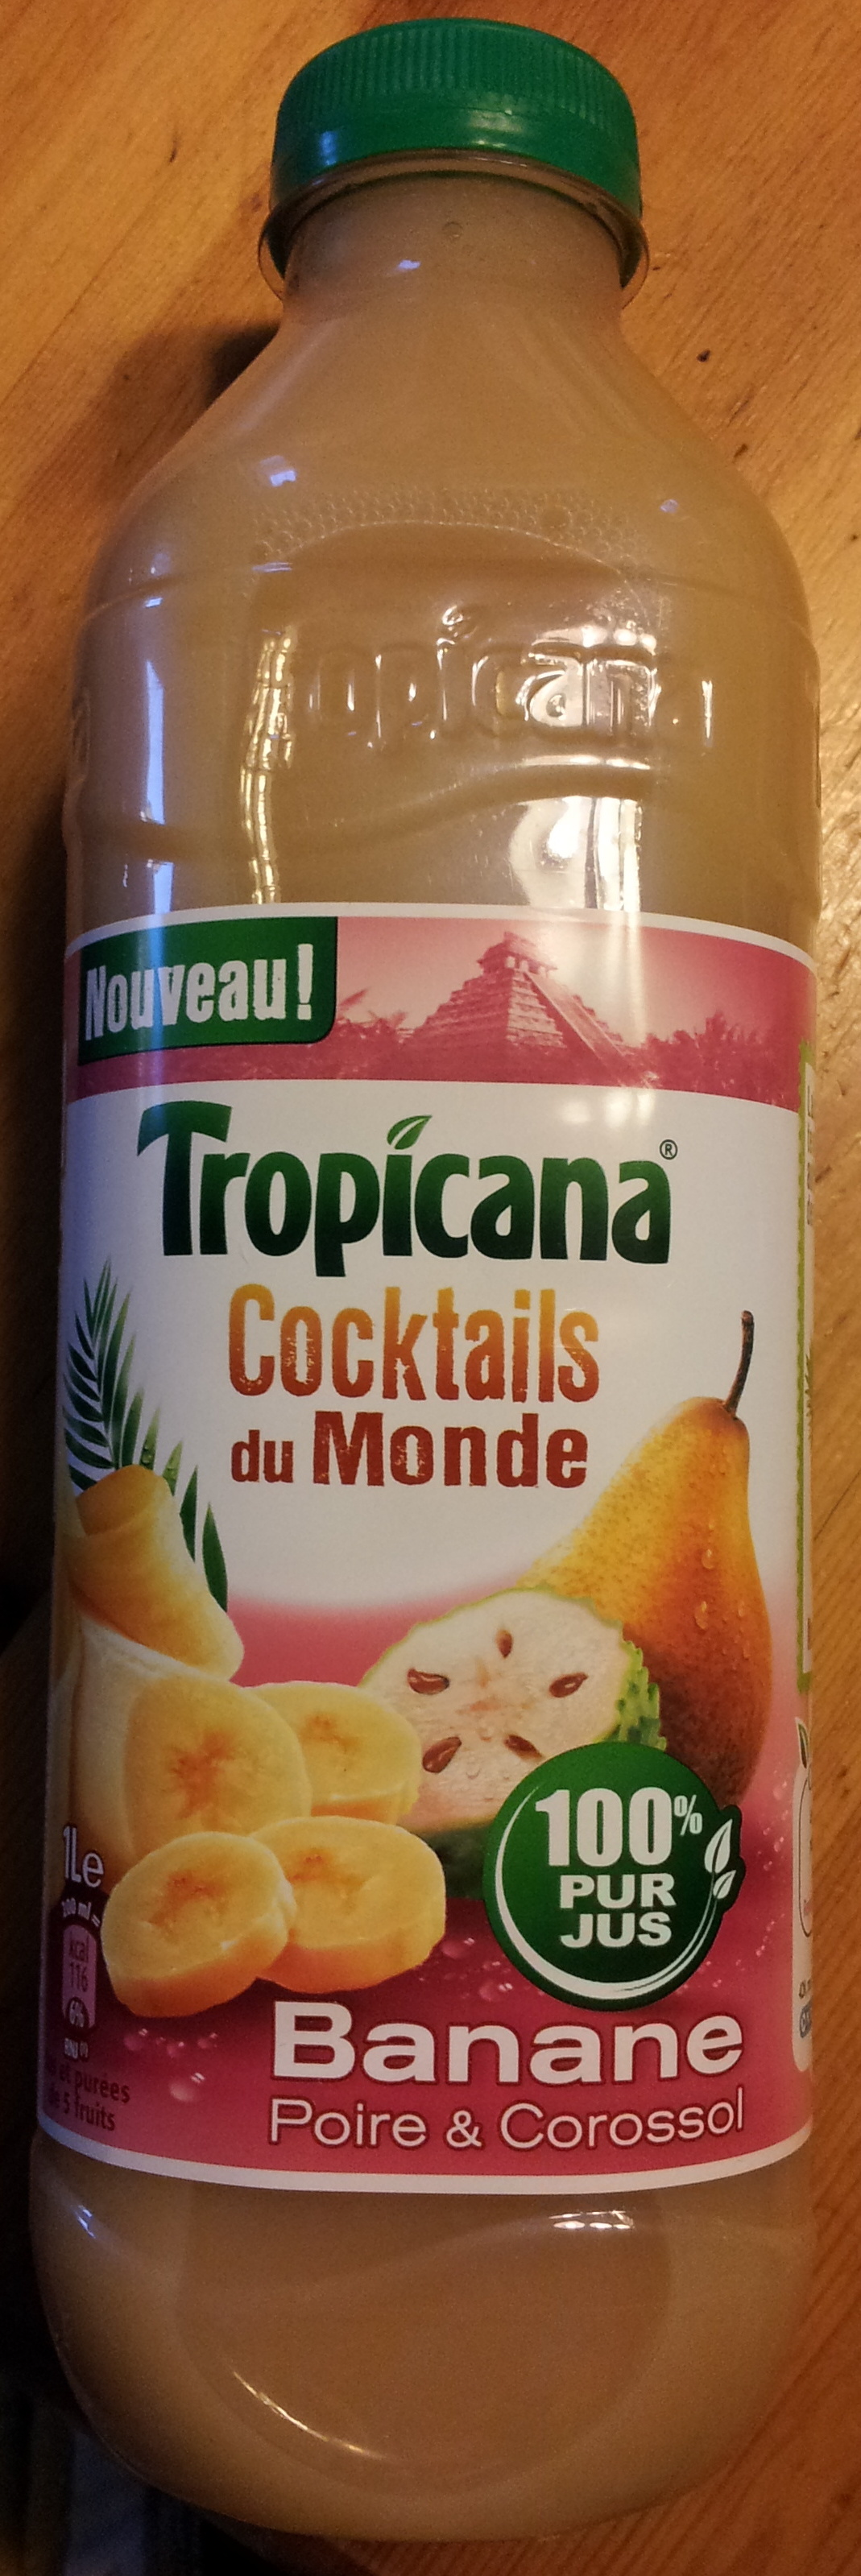 Cocktails du Monde - Banane Poire & Corossol - Product - fr